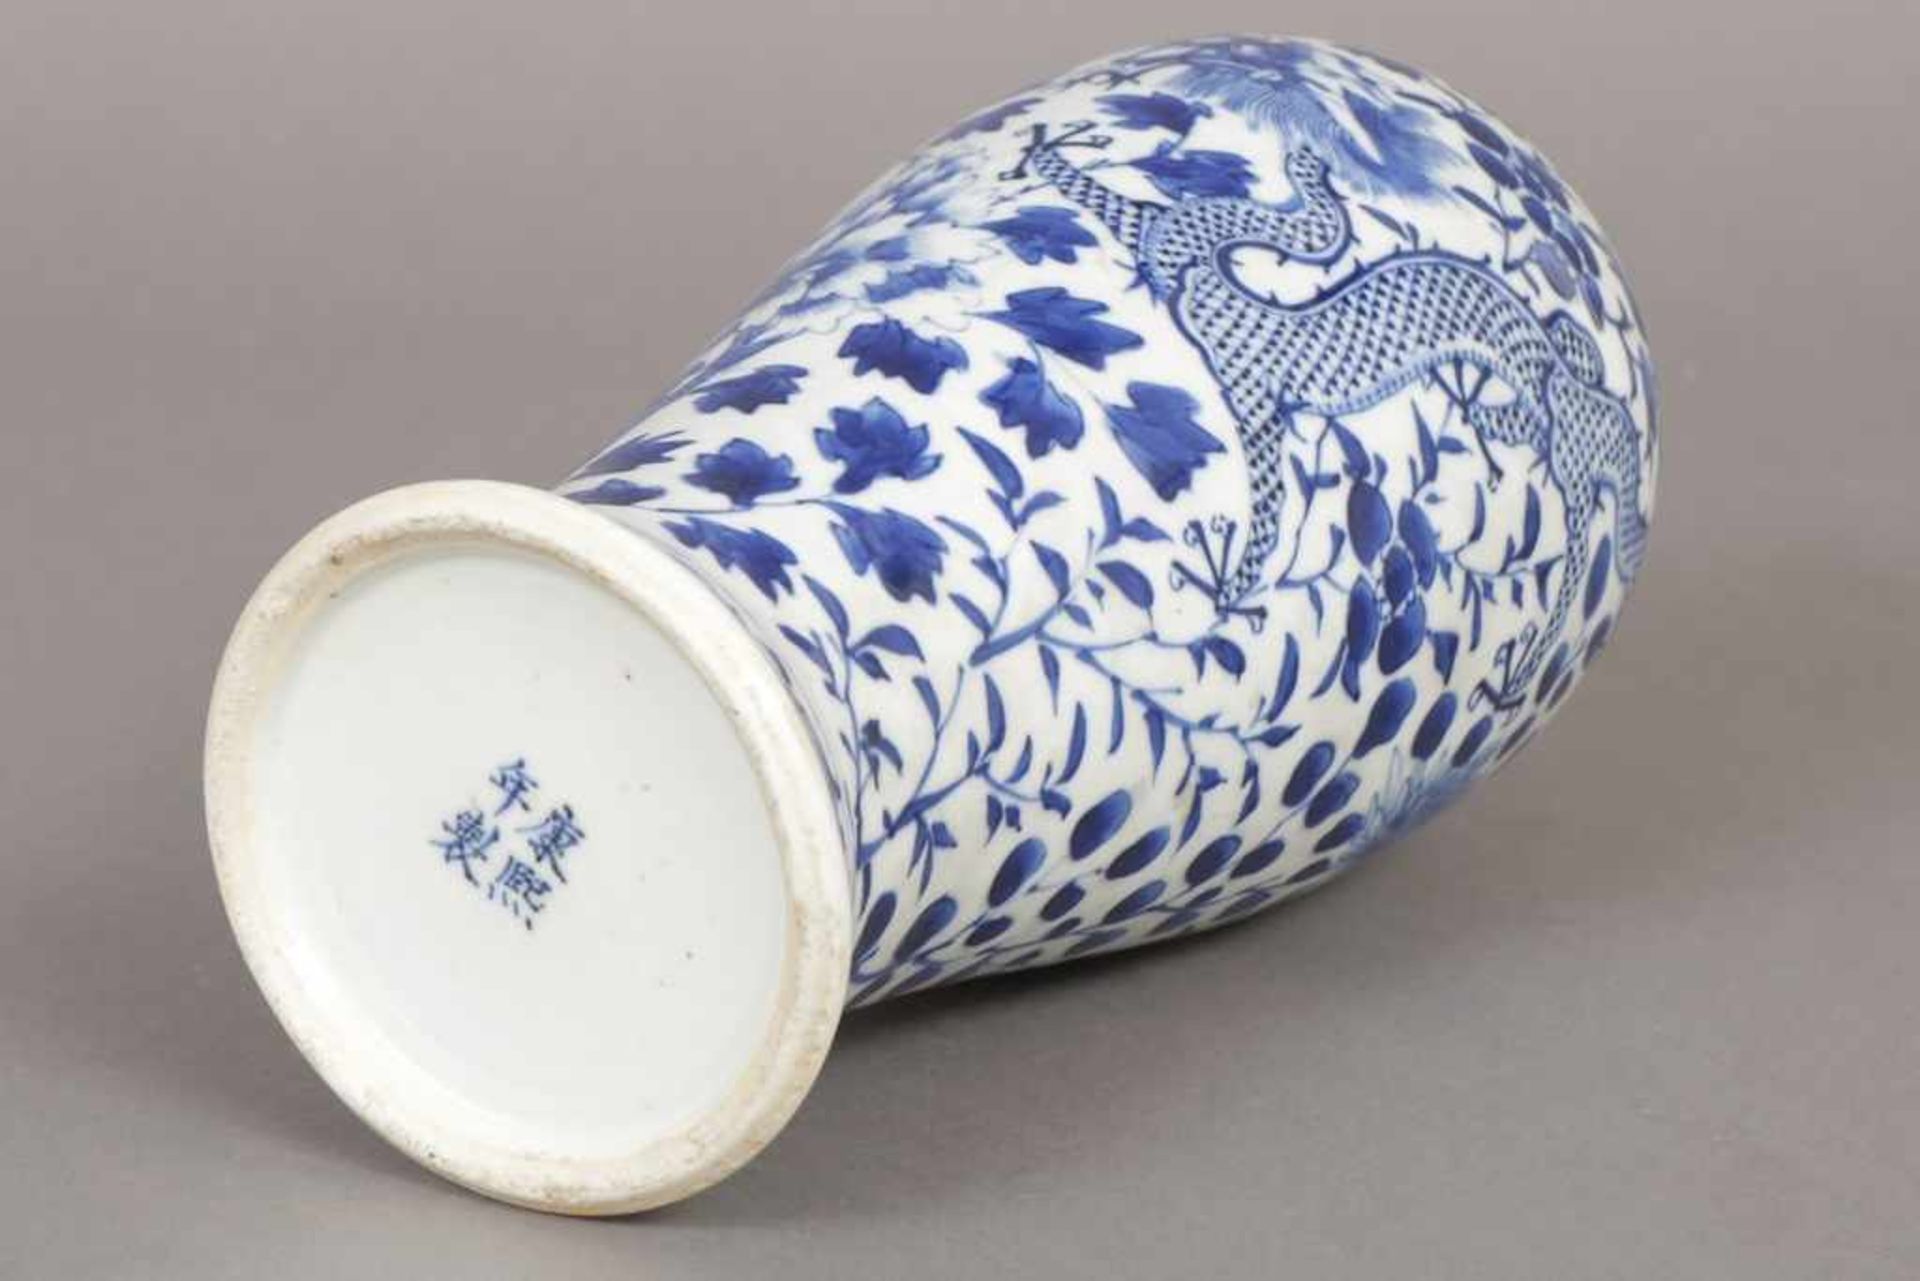 Chinesische Meiping-Vase Porzellan, hell glasiert, mit Drachen-, Päonien- und Blätterdekor in - Bild 2 aus 2